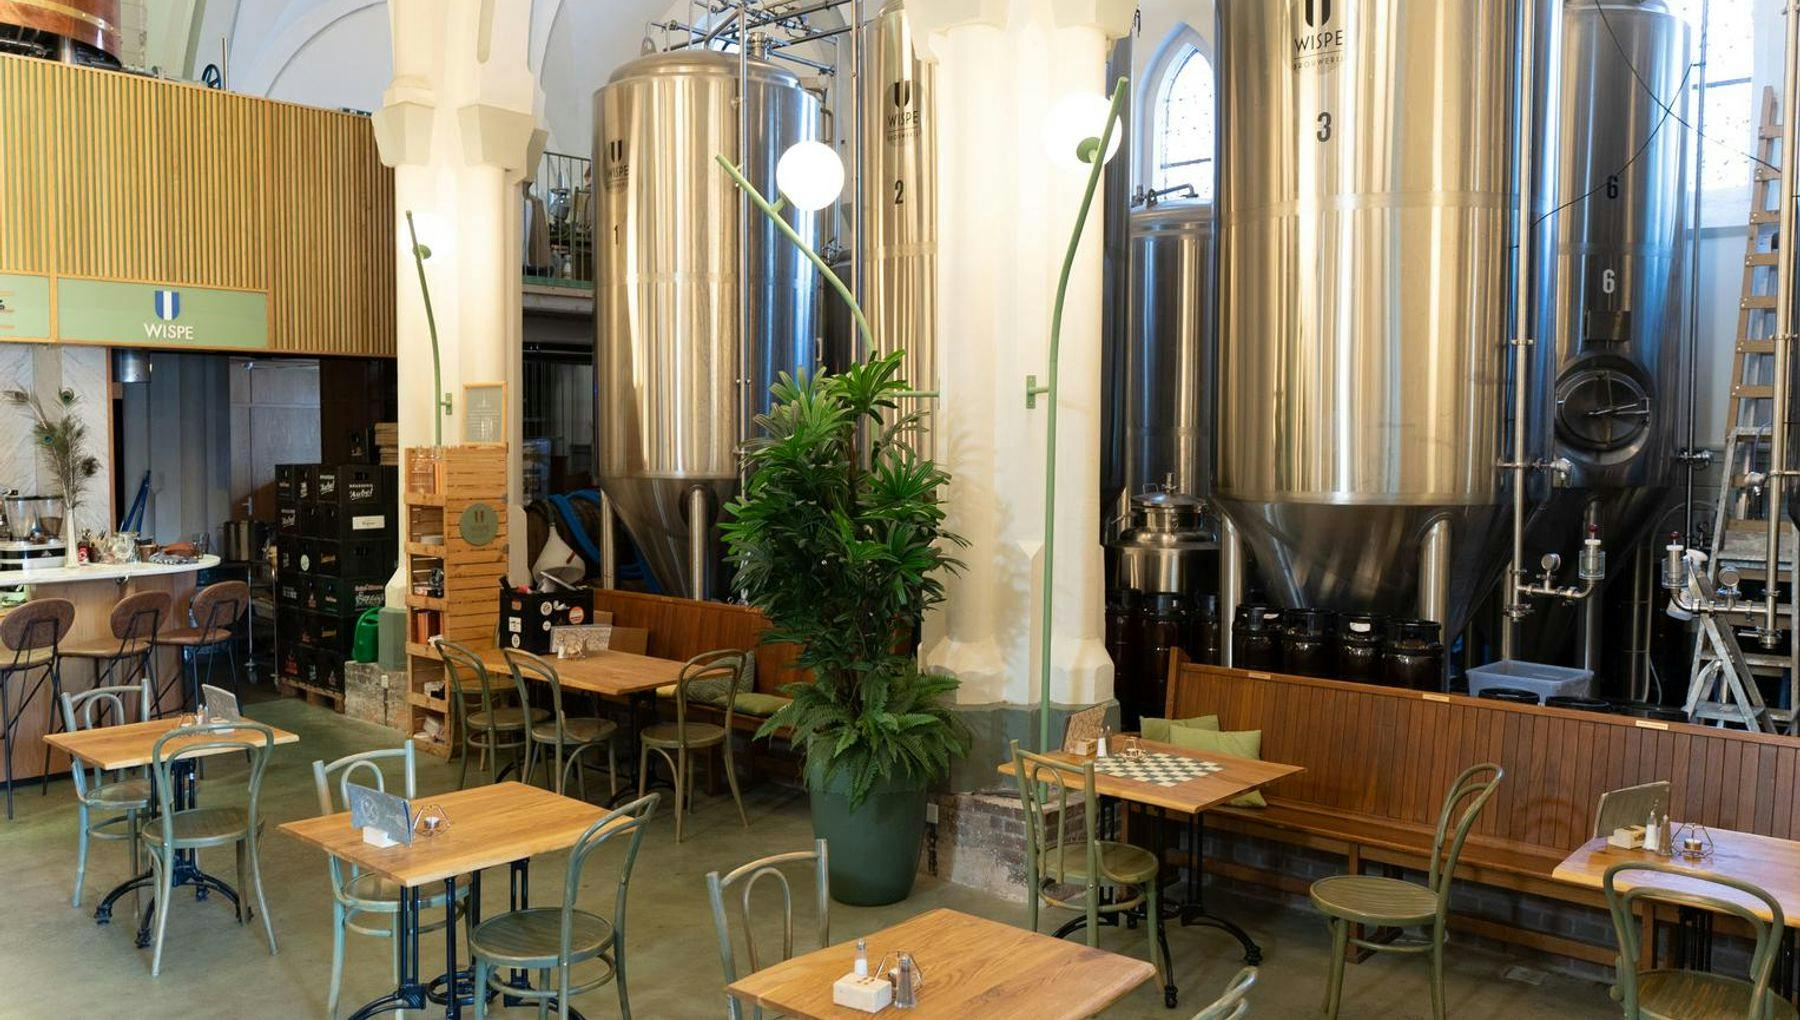 Wispe beer brewery in Weesp